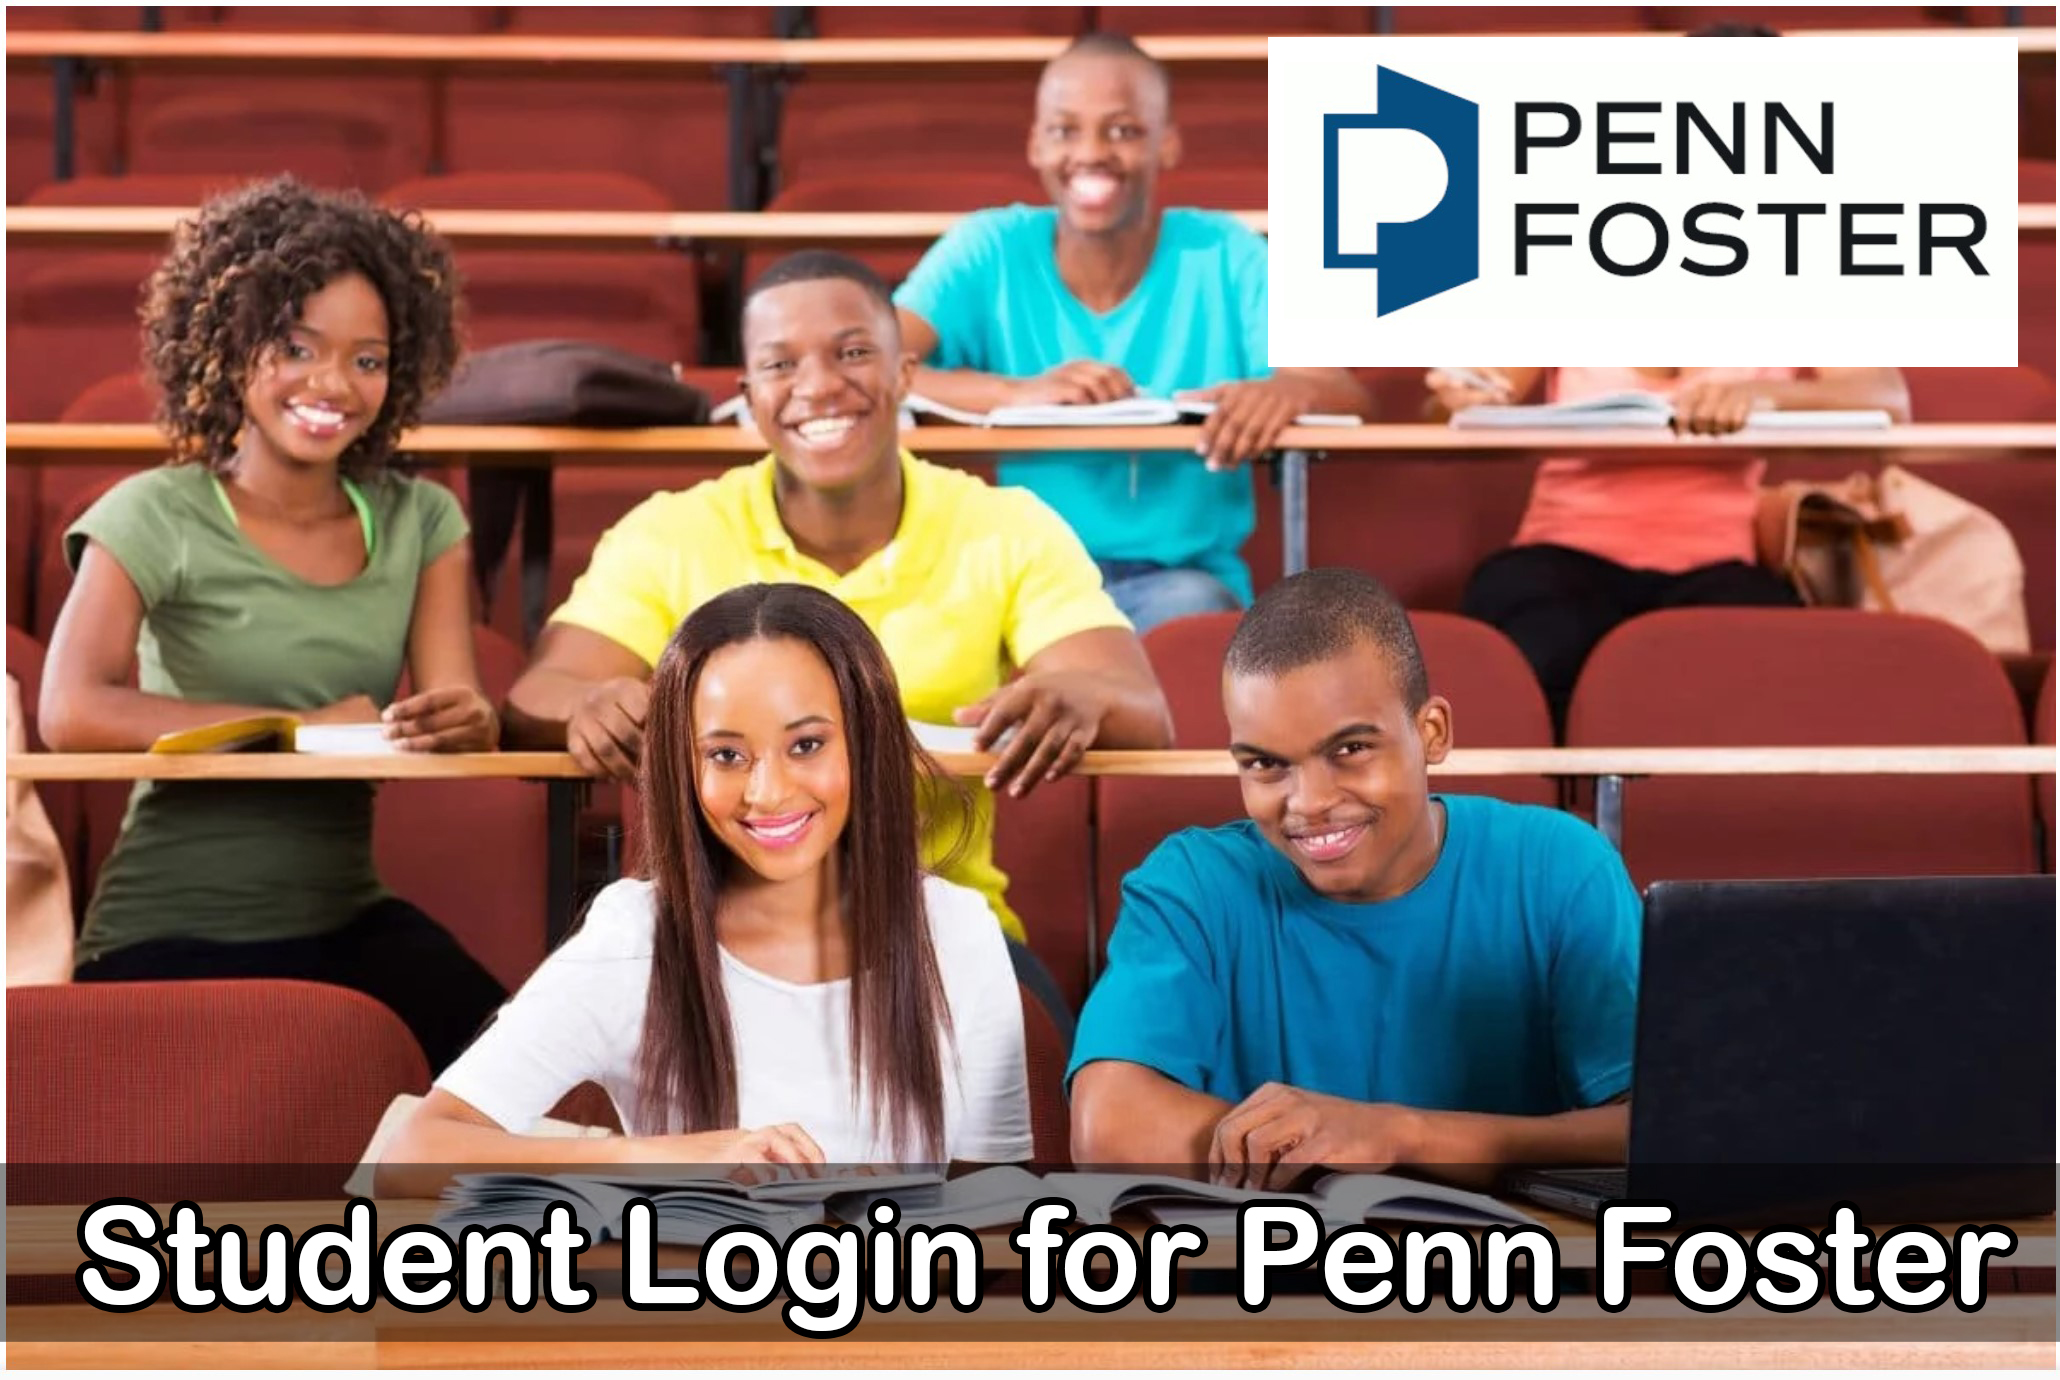 Student Login for Penn Foster